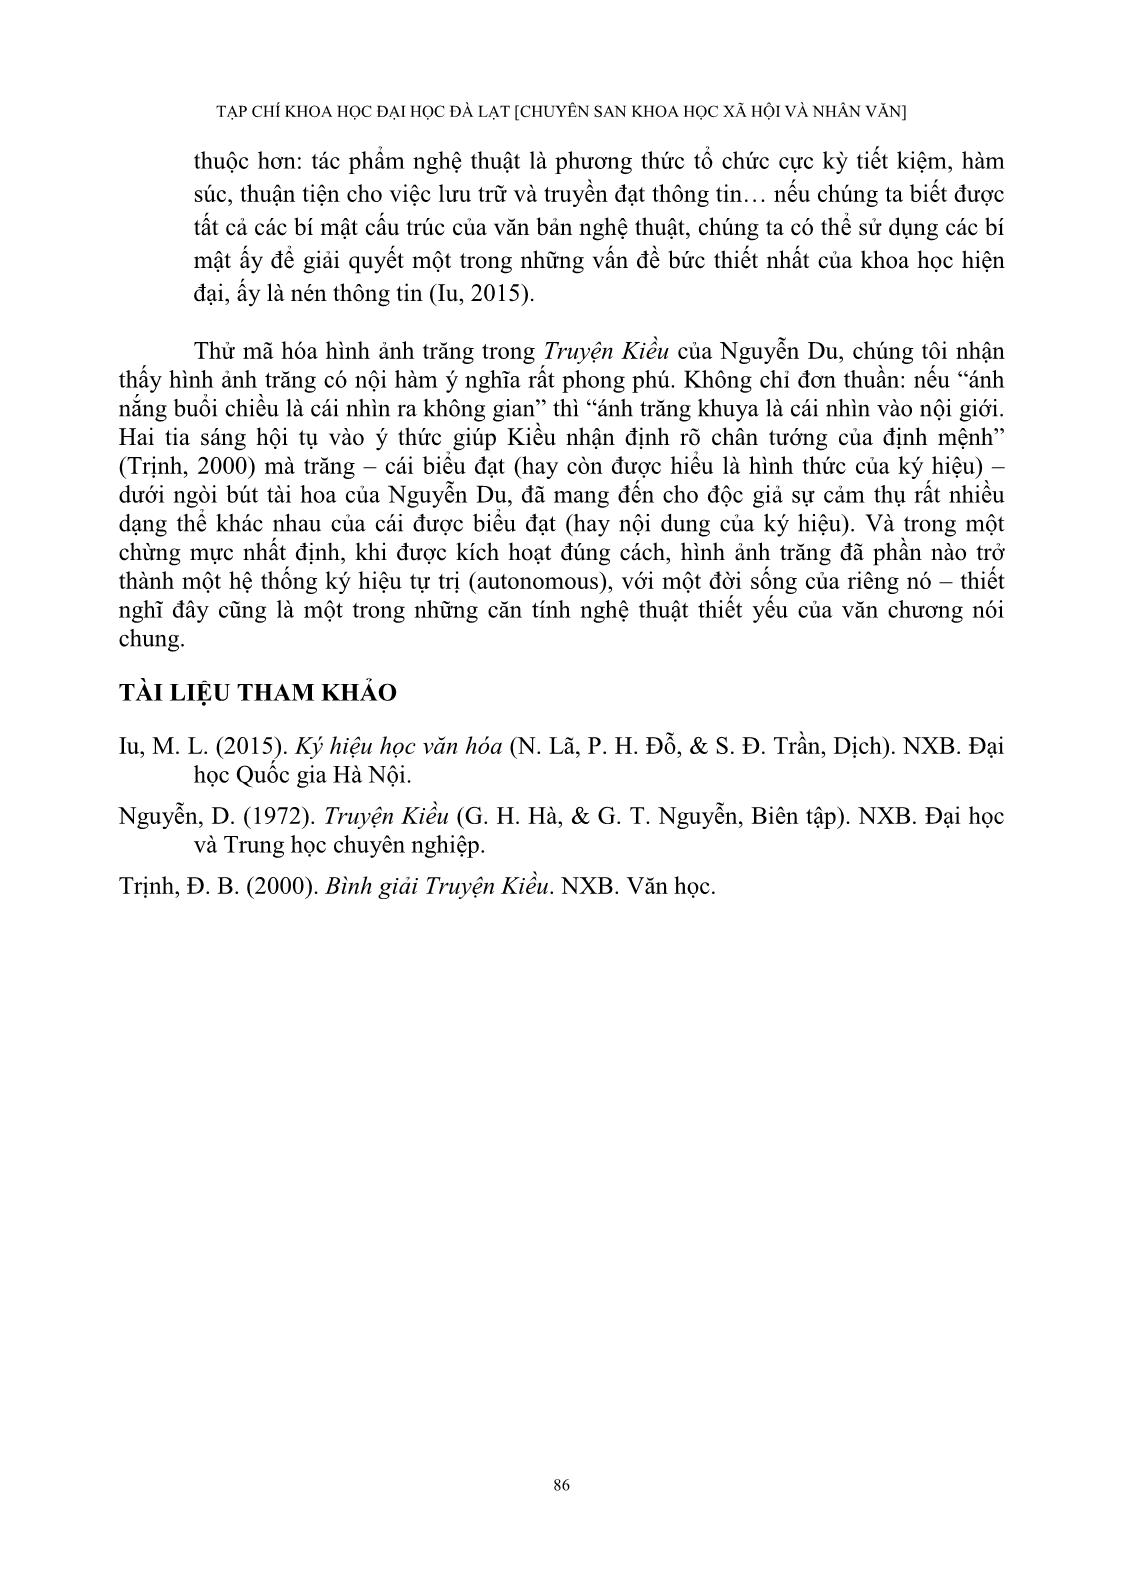 Thử mã hóa hình ảnh trăng trong truyện Kiều của Nguyễn Du trang 10